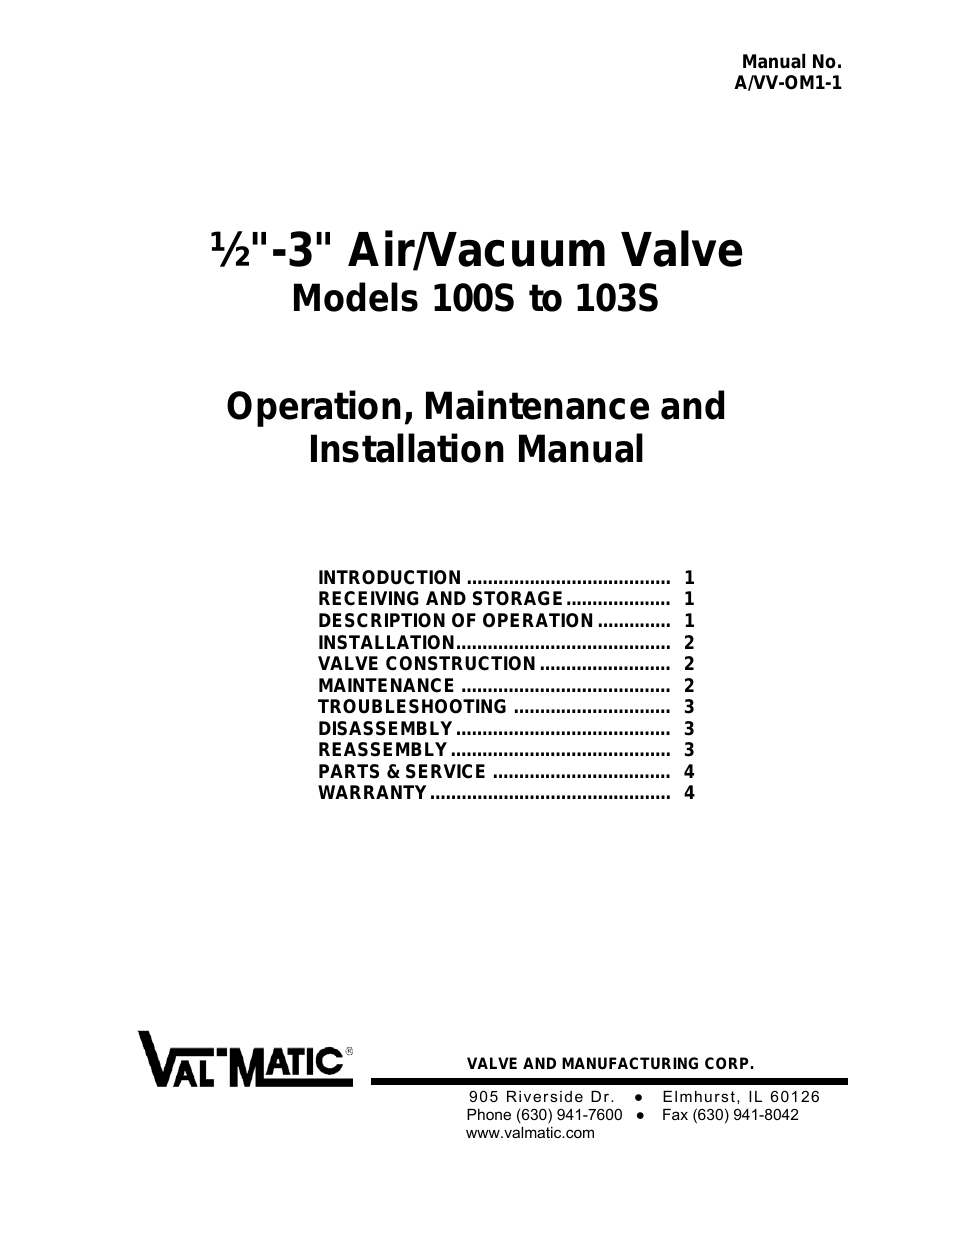 100S to 103S 1/2-3 Air/Vacuum Valve